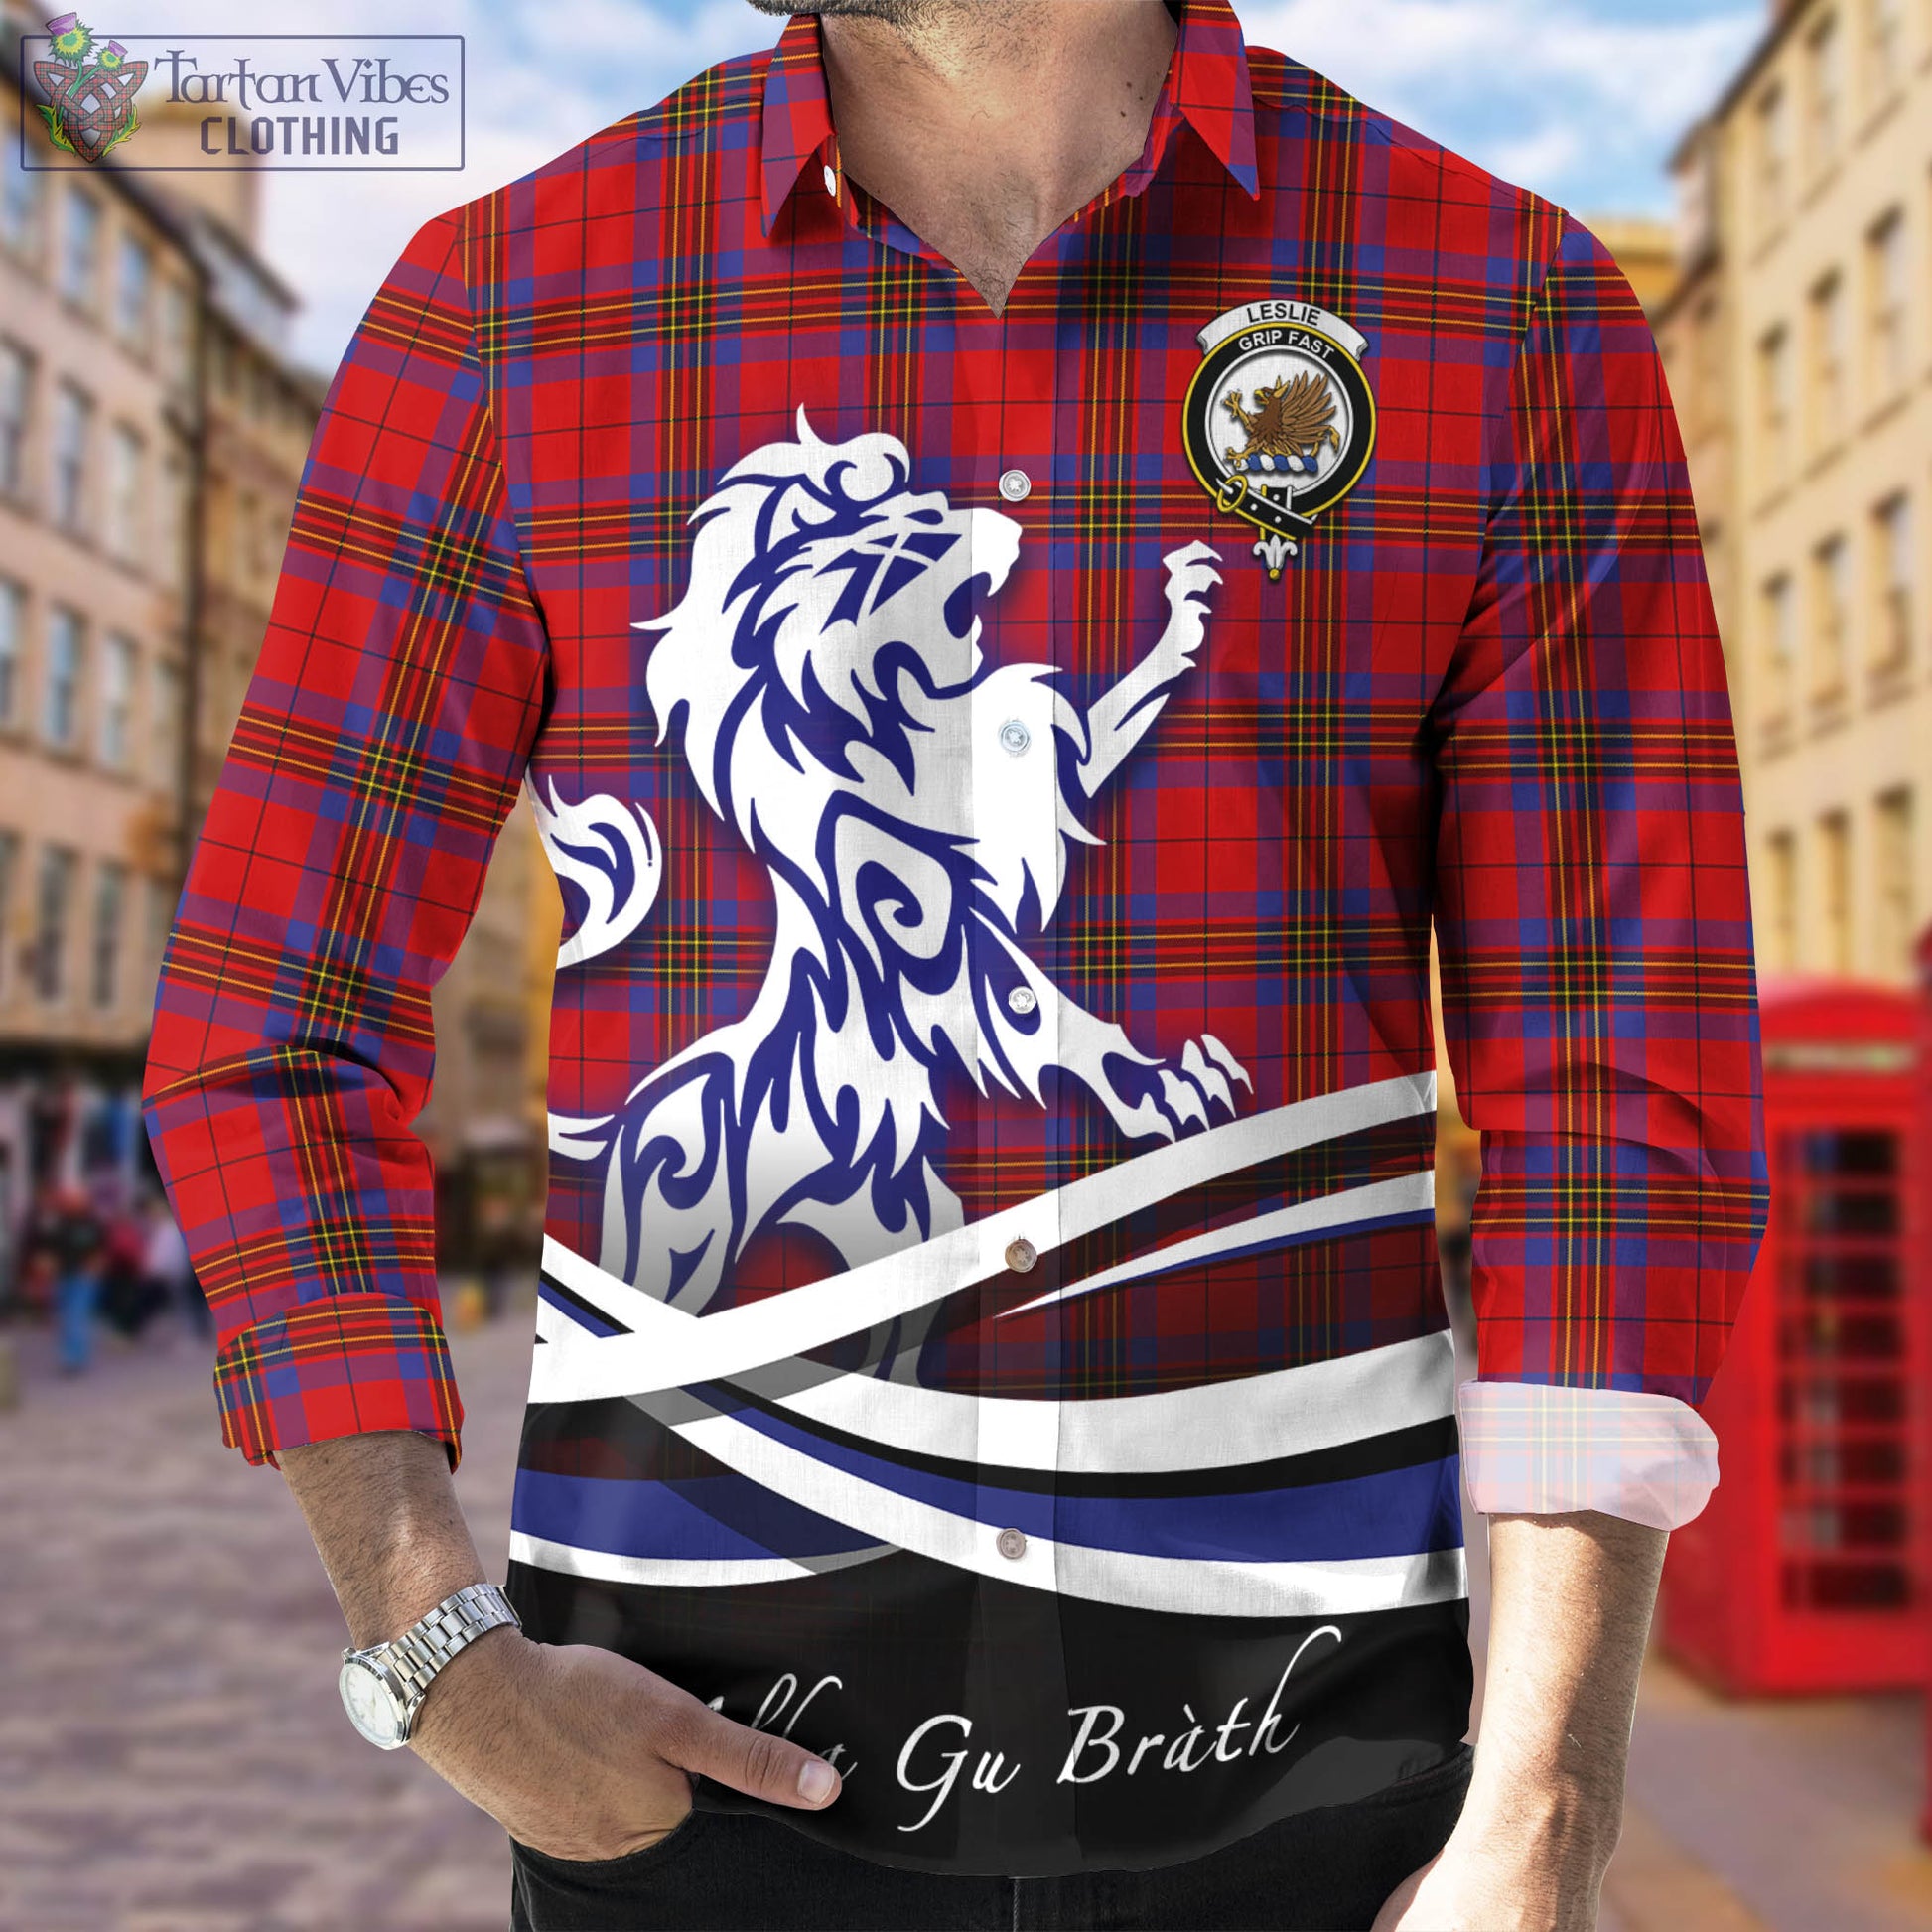 leslie-modern-tartan-long-sleeve-button-up-shirt-with-alba-gu-brath-regal-lion-emblem